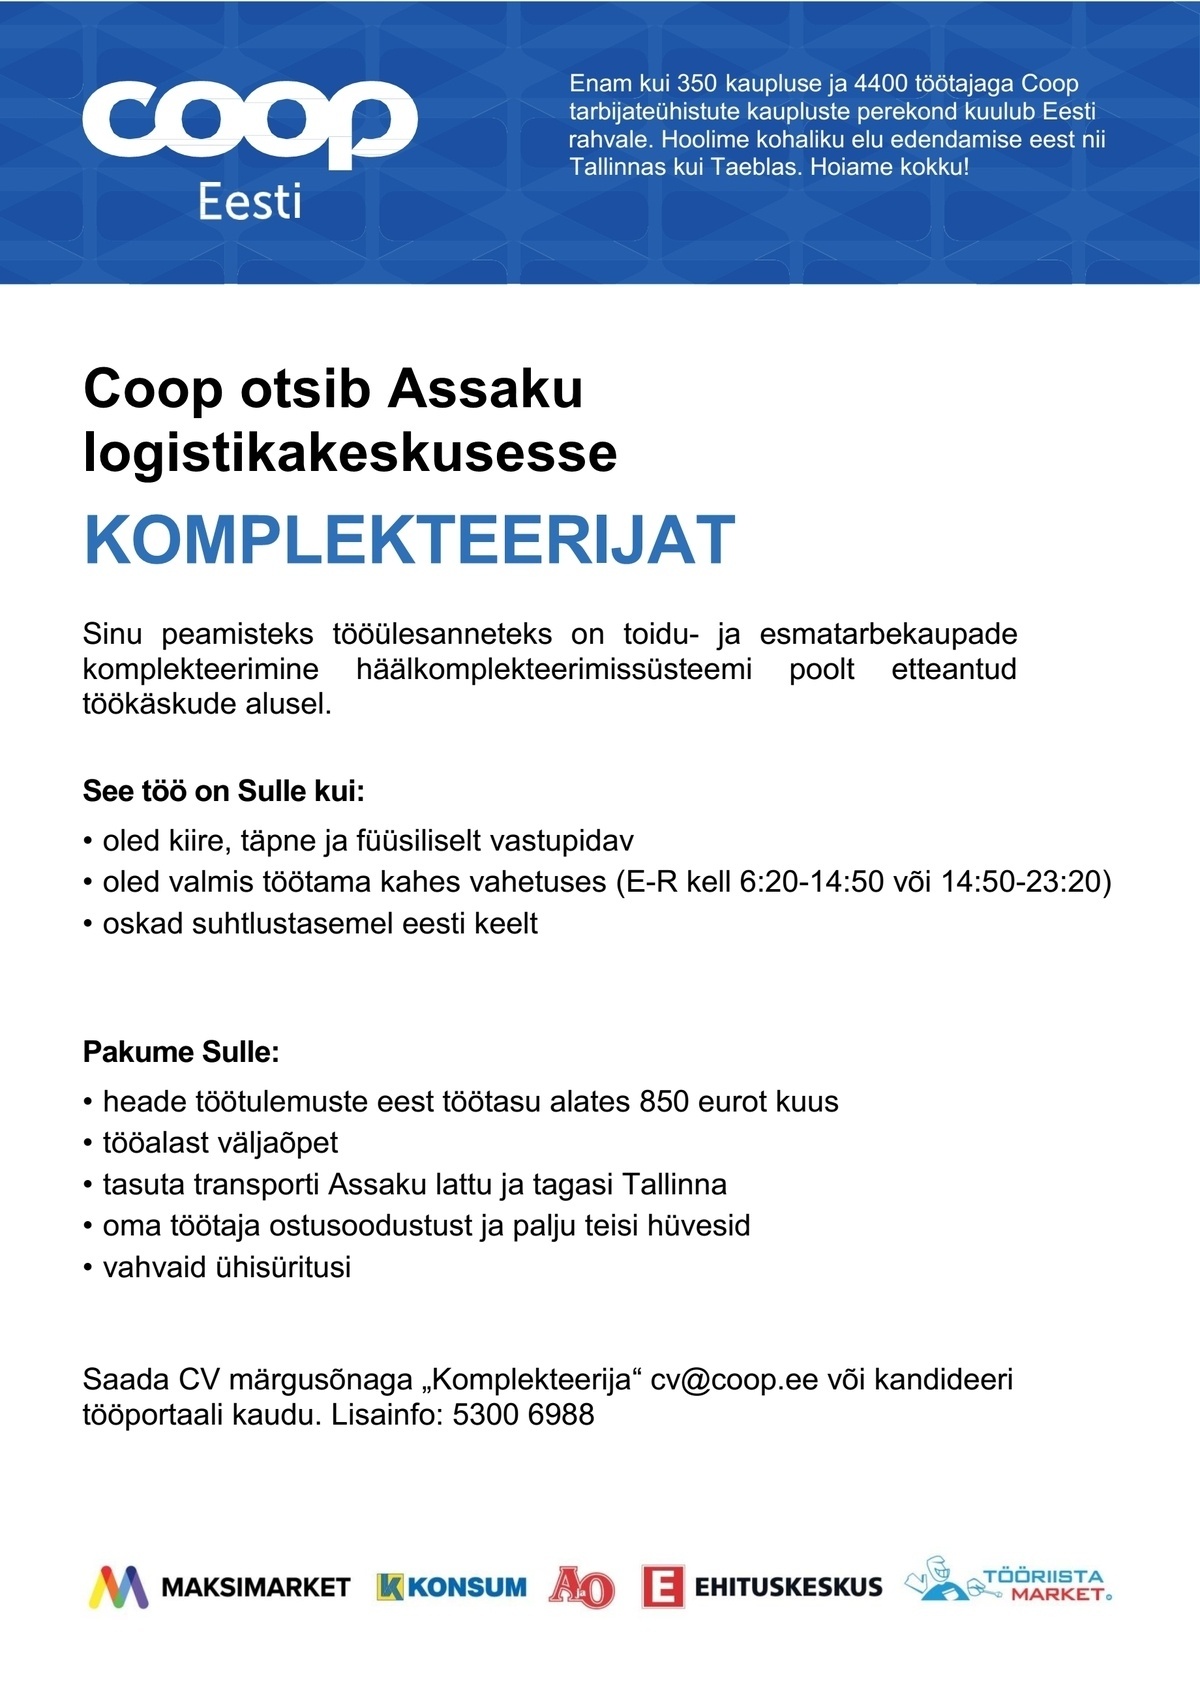 Coop Eesti Keskühistu Komplekteerija (Assaku logistikakeskus)